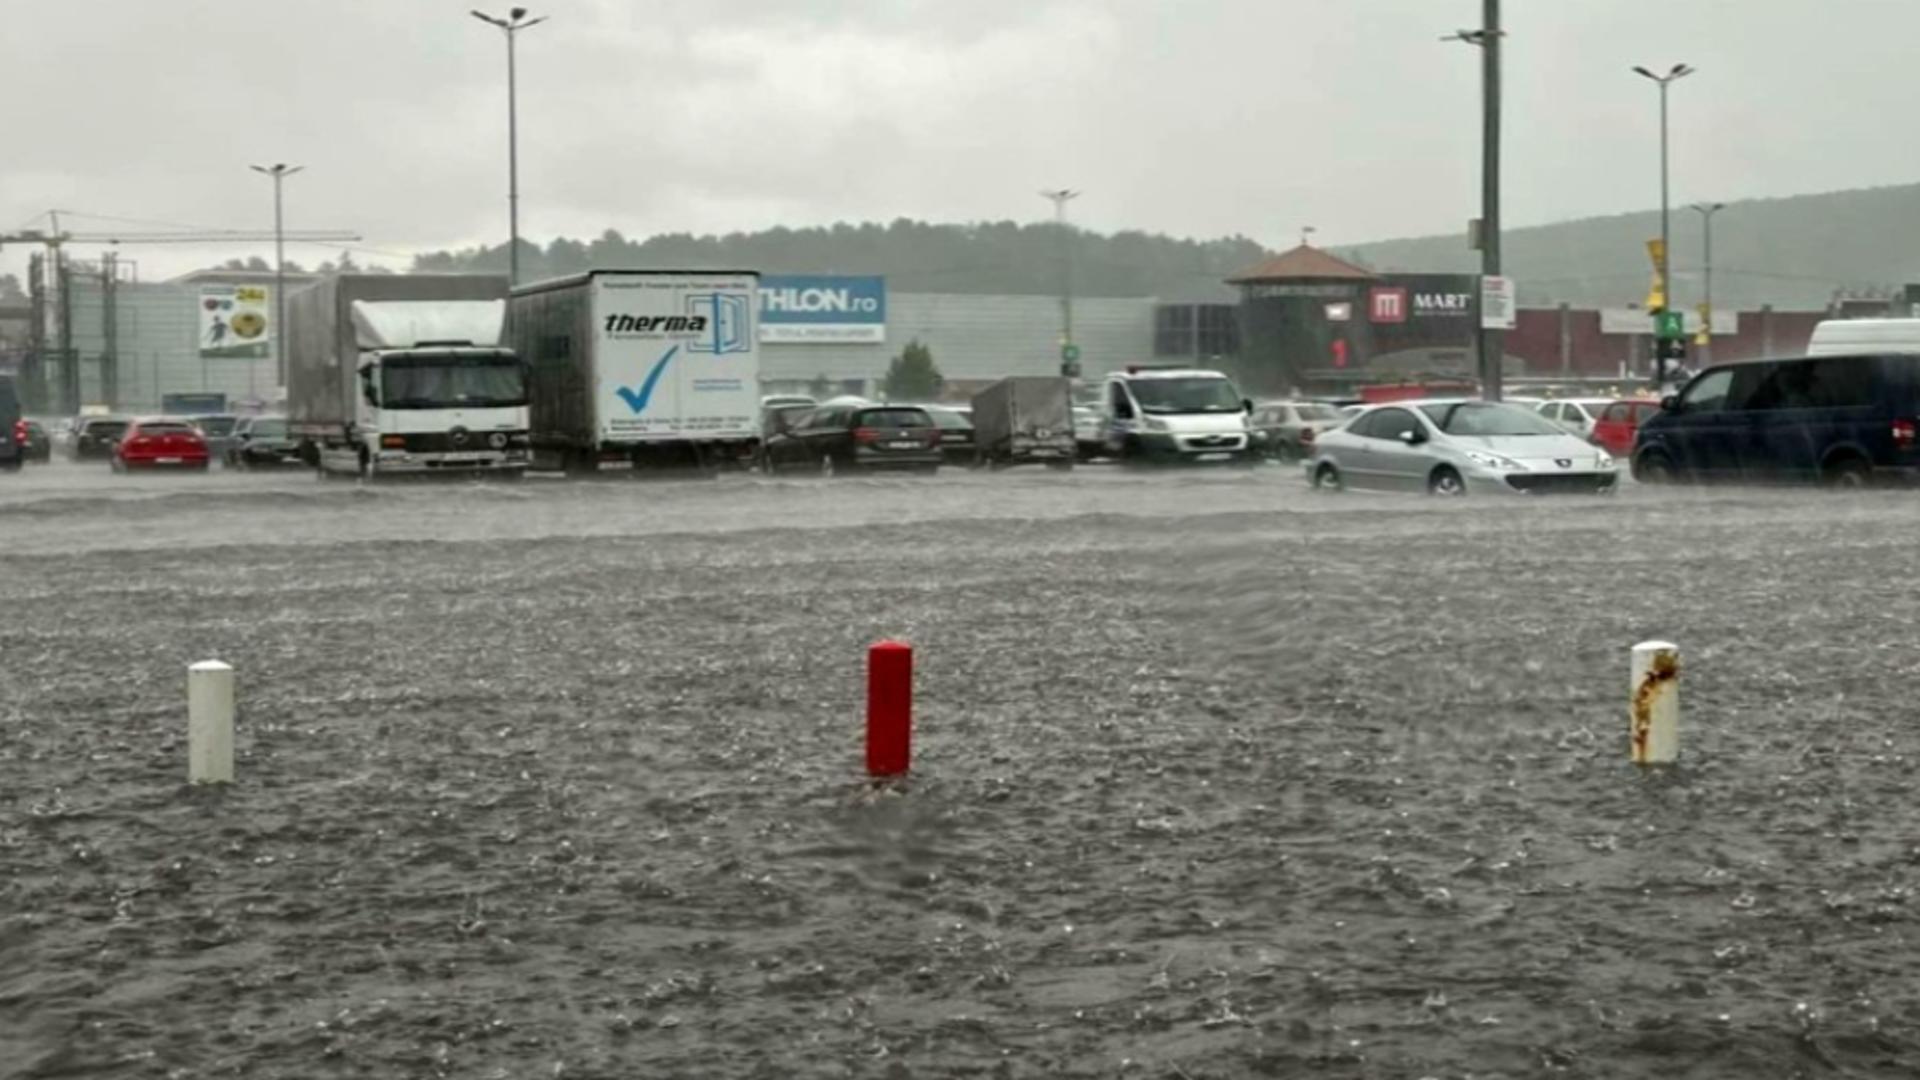 Panică în parcarea unui centru comercial din Cluj: 10 persoane au rămas blocate în maşini din cauza inundaţiei - VIDEO 